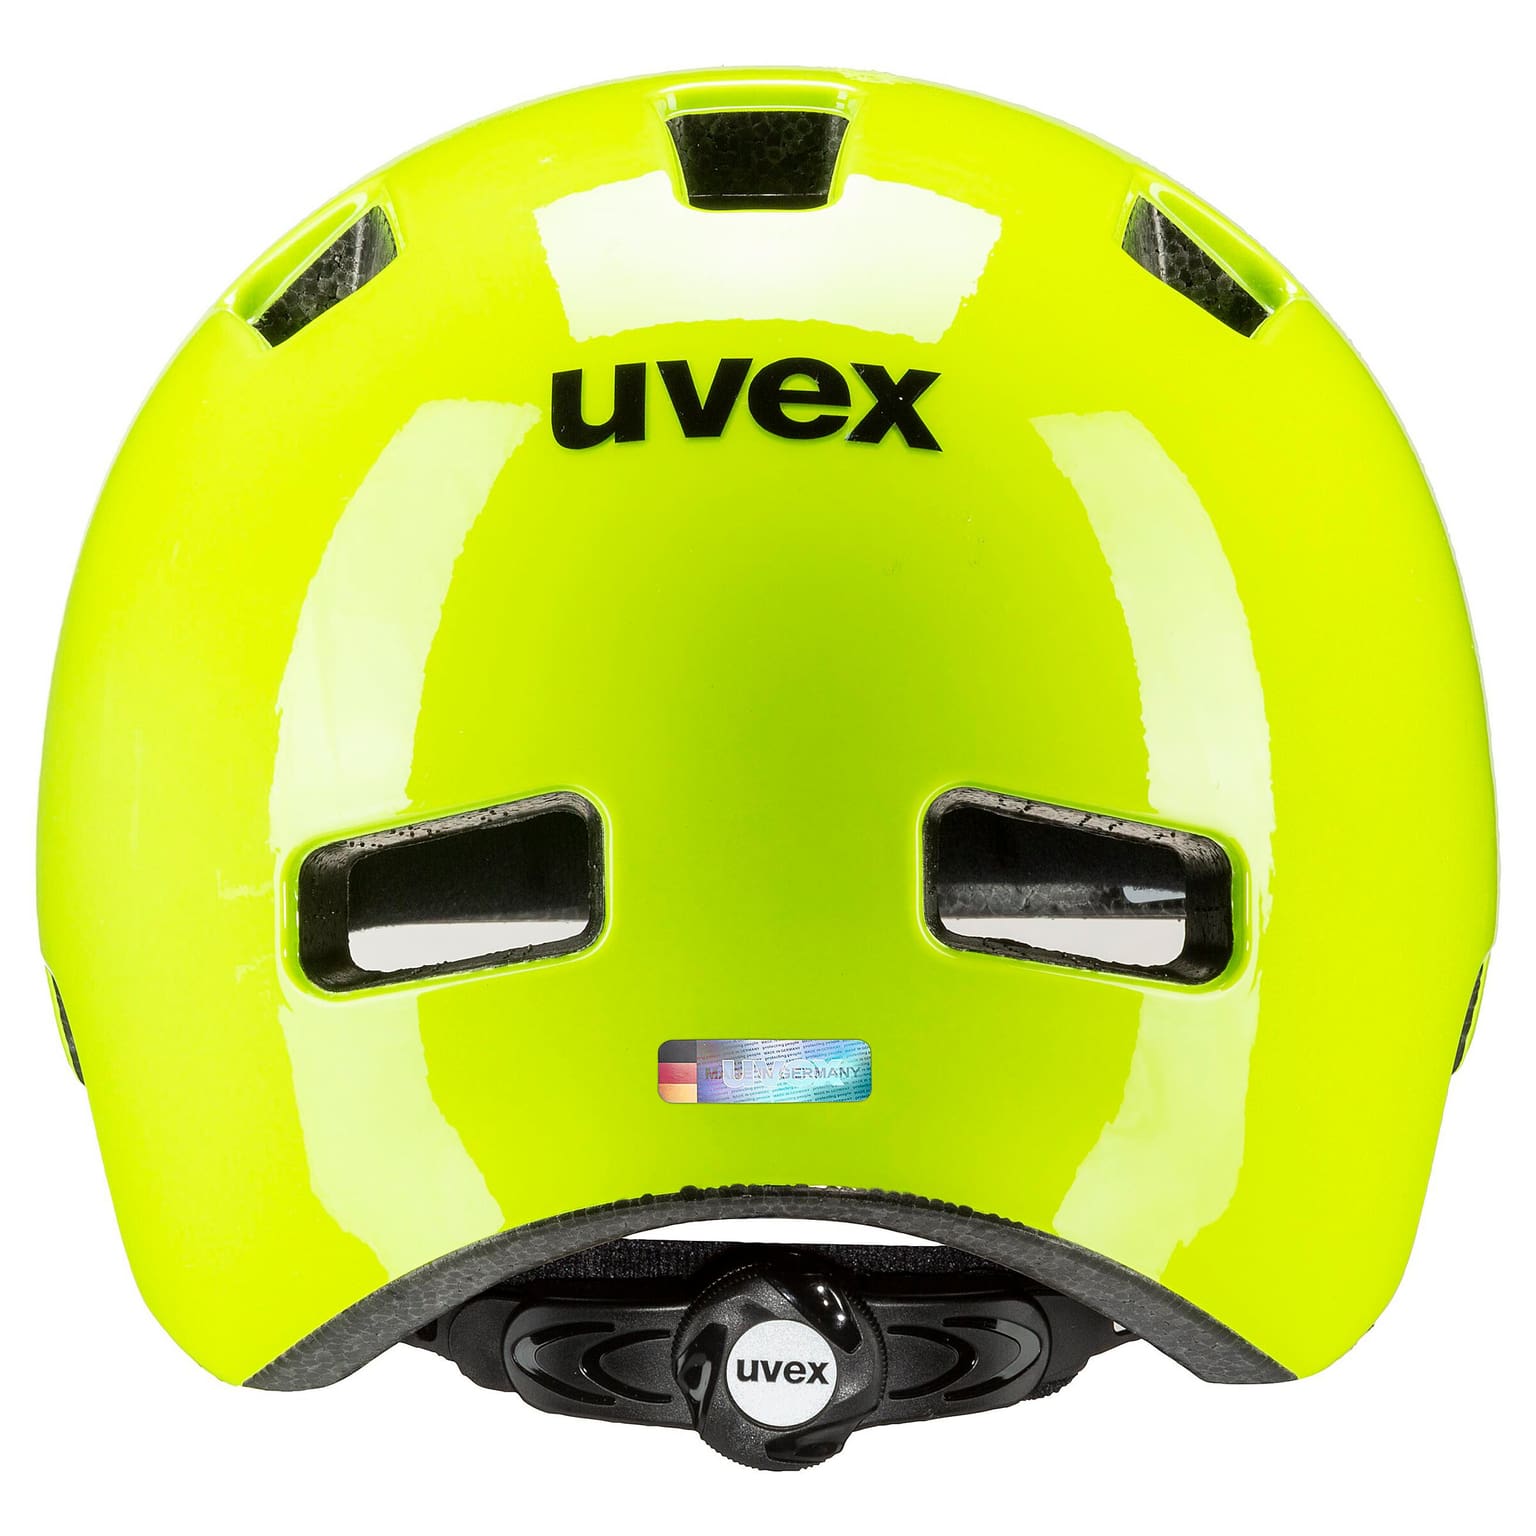 Uvex Uvex hlmt 4 Velohelm jaune-neon 5